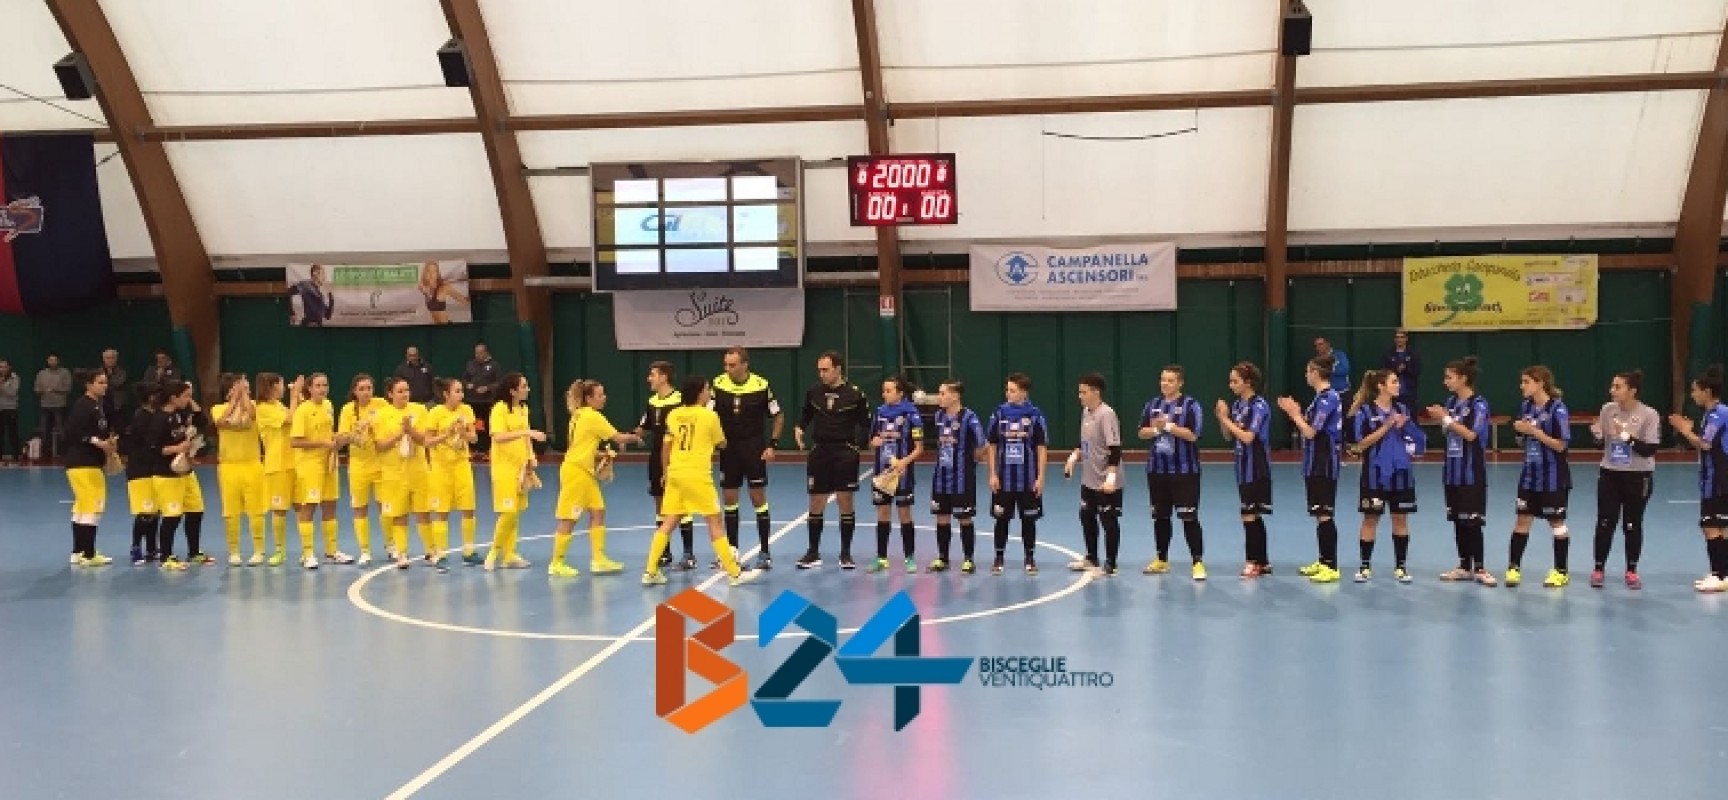 Annese-Zaccagnino ed il Futsal Bisceglie femminile batte il Martina / CLASSIFICA